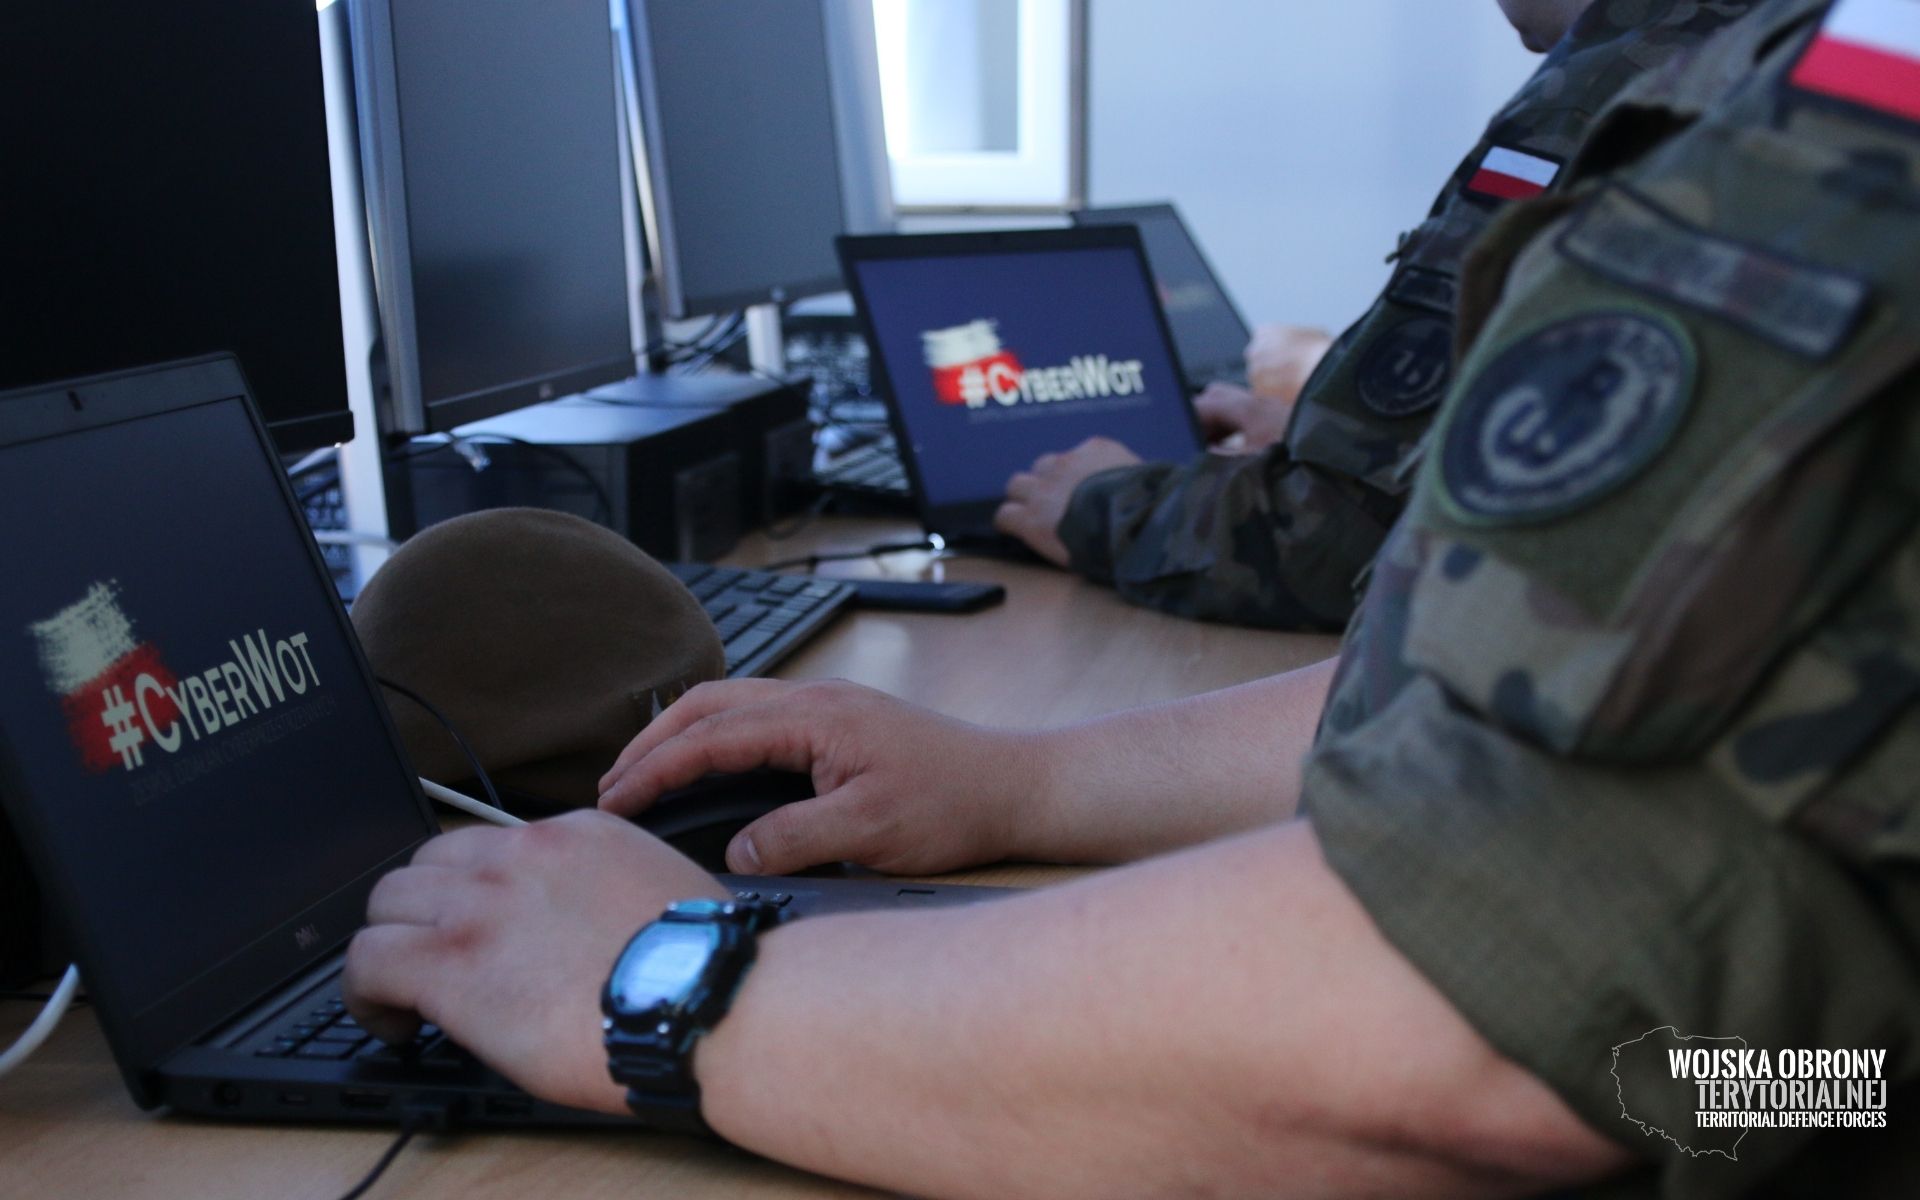 Województwo lubelskie: Terytorialsi chcą pomagać urzędom bronić się przed hakerami - Zdjęcie główne